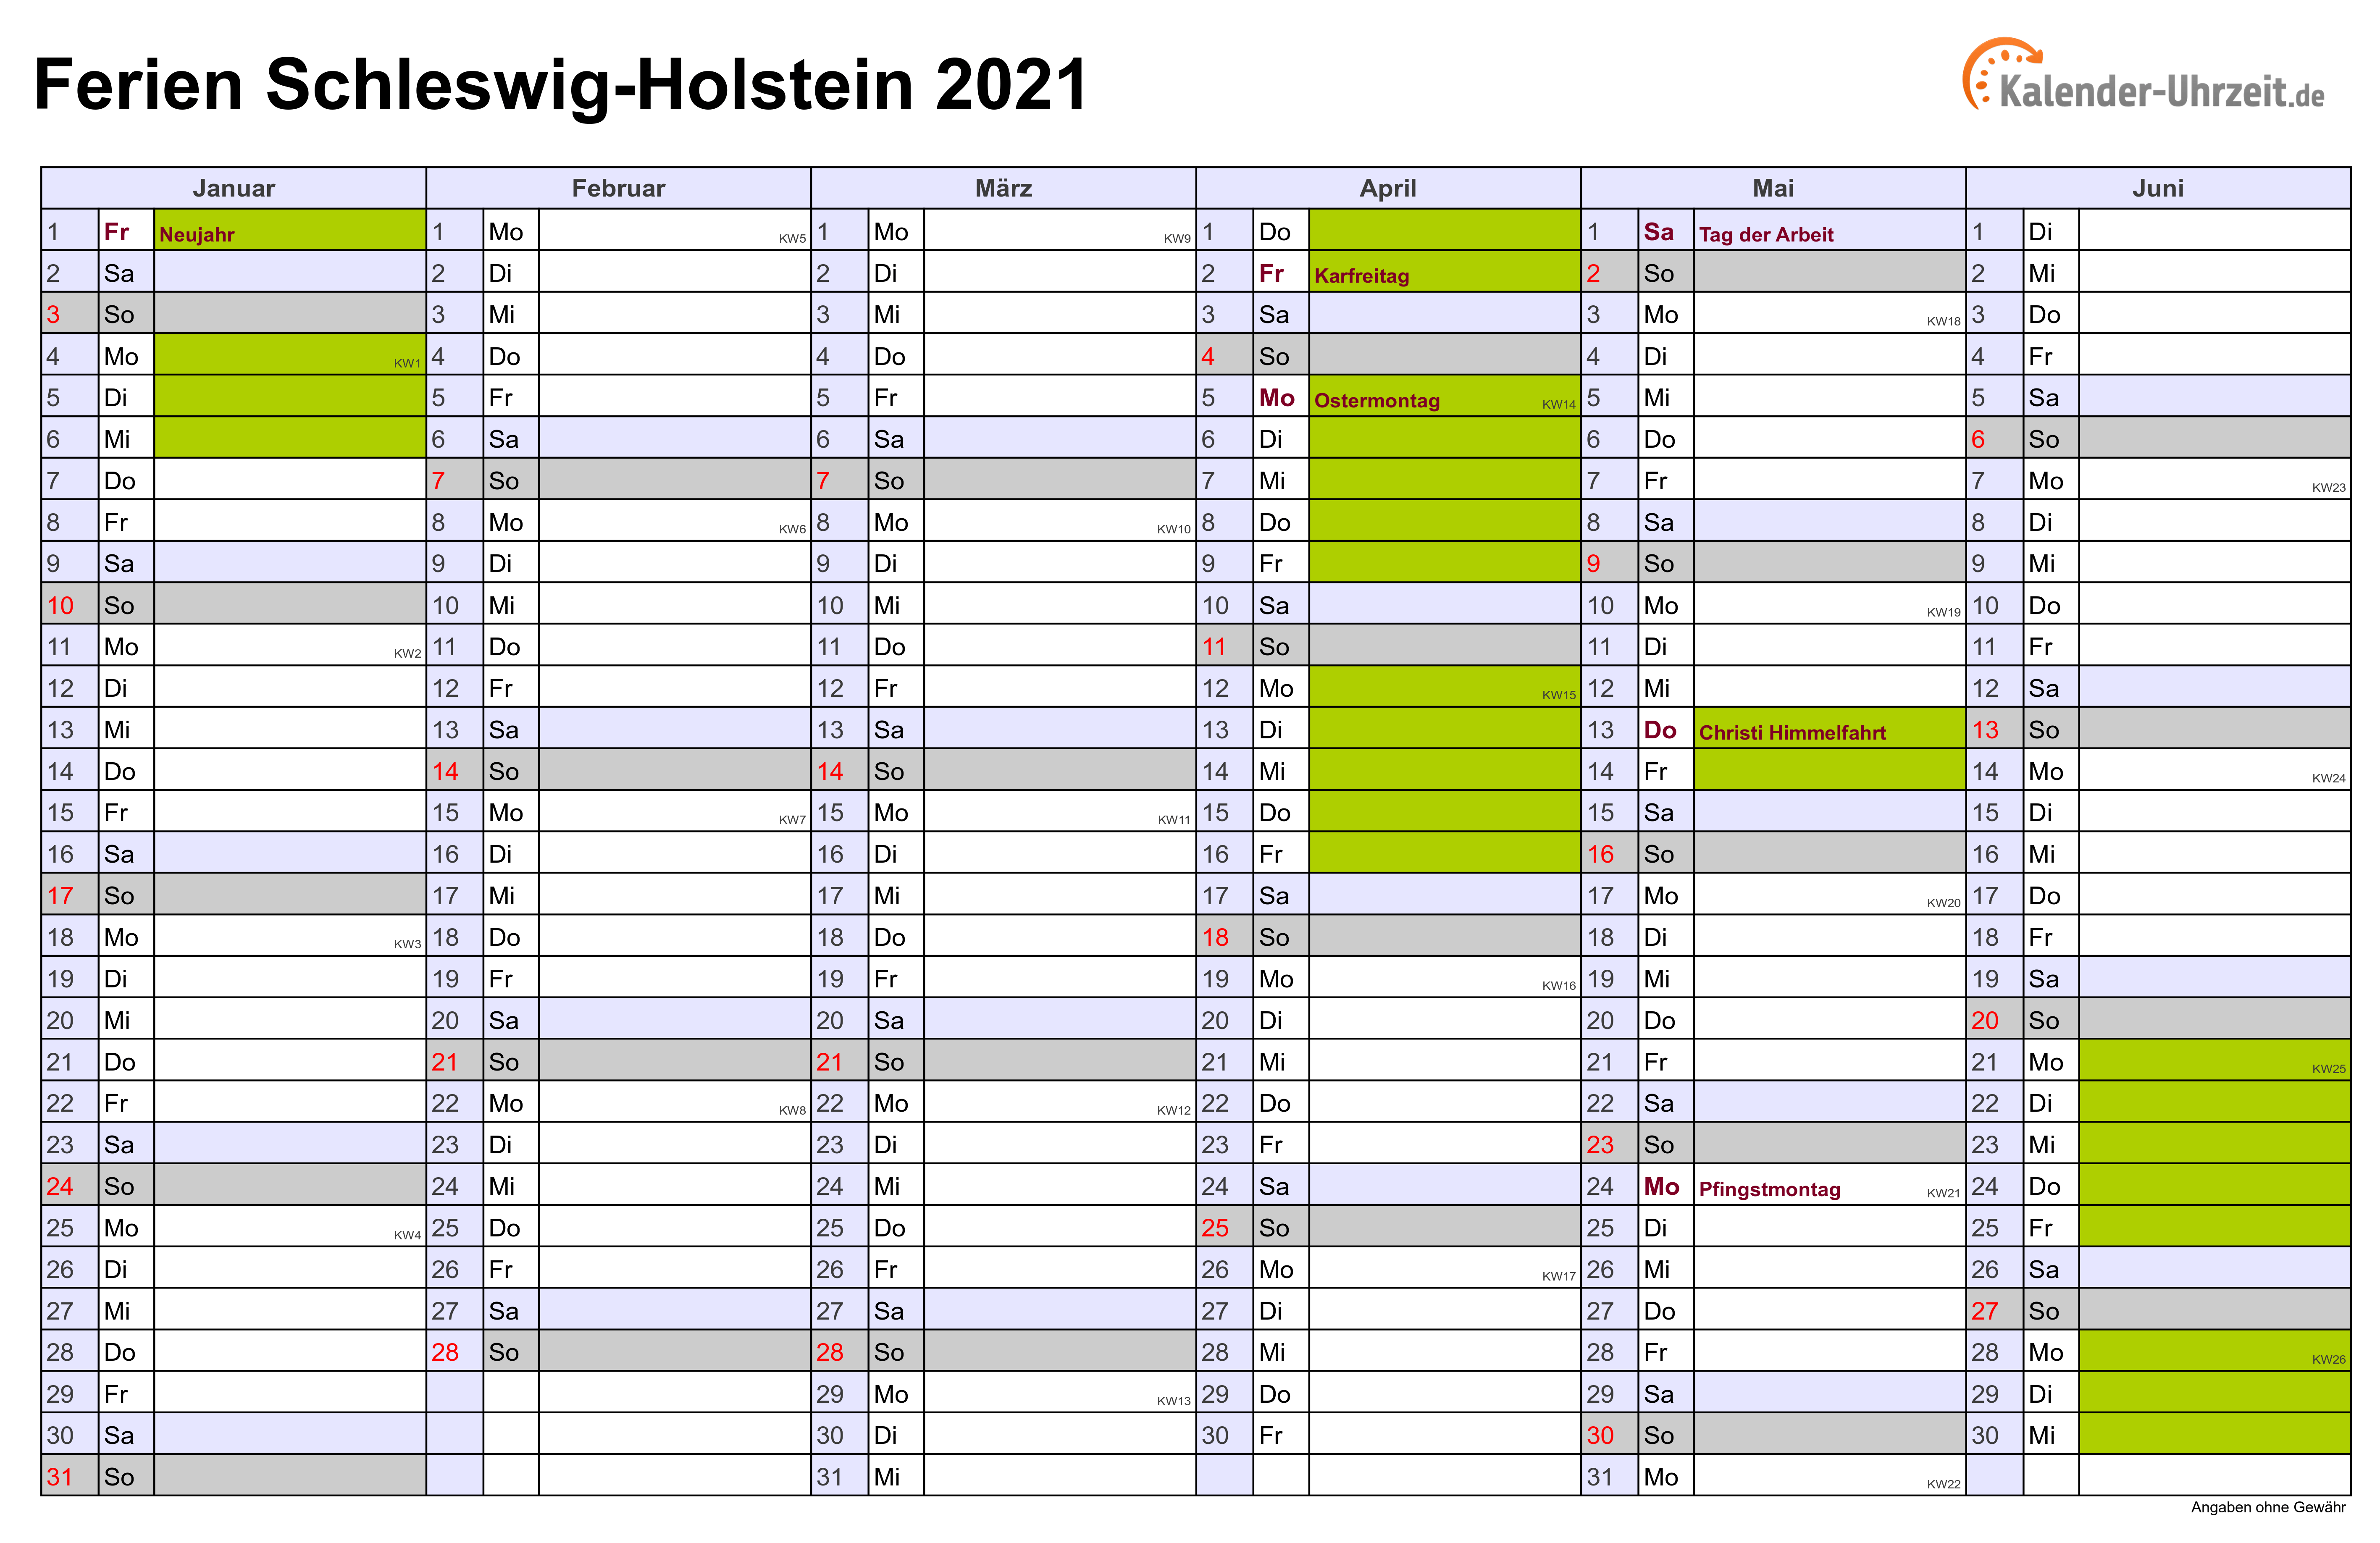 Ferien Schleswig-Holstein 2021 - Ferienkalender zum Ausdrucken